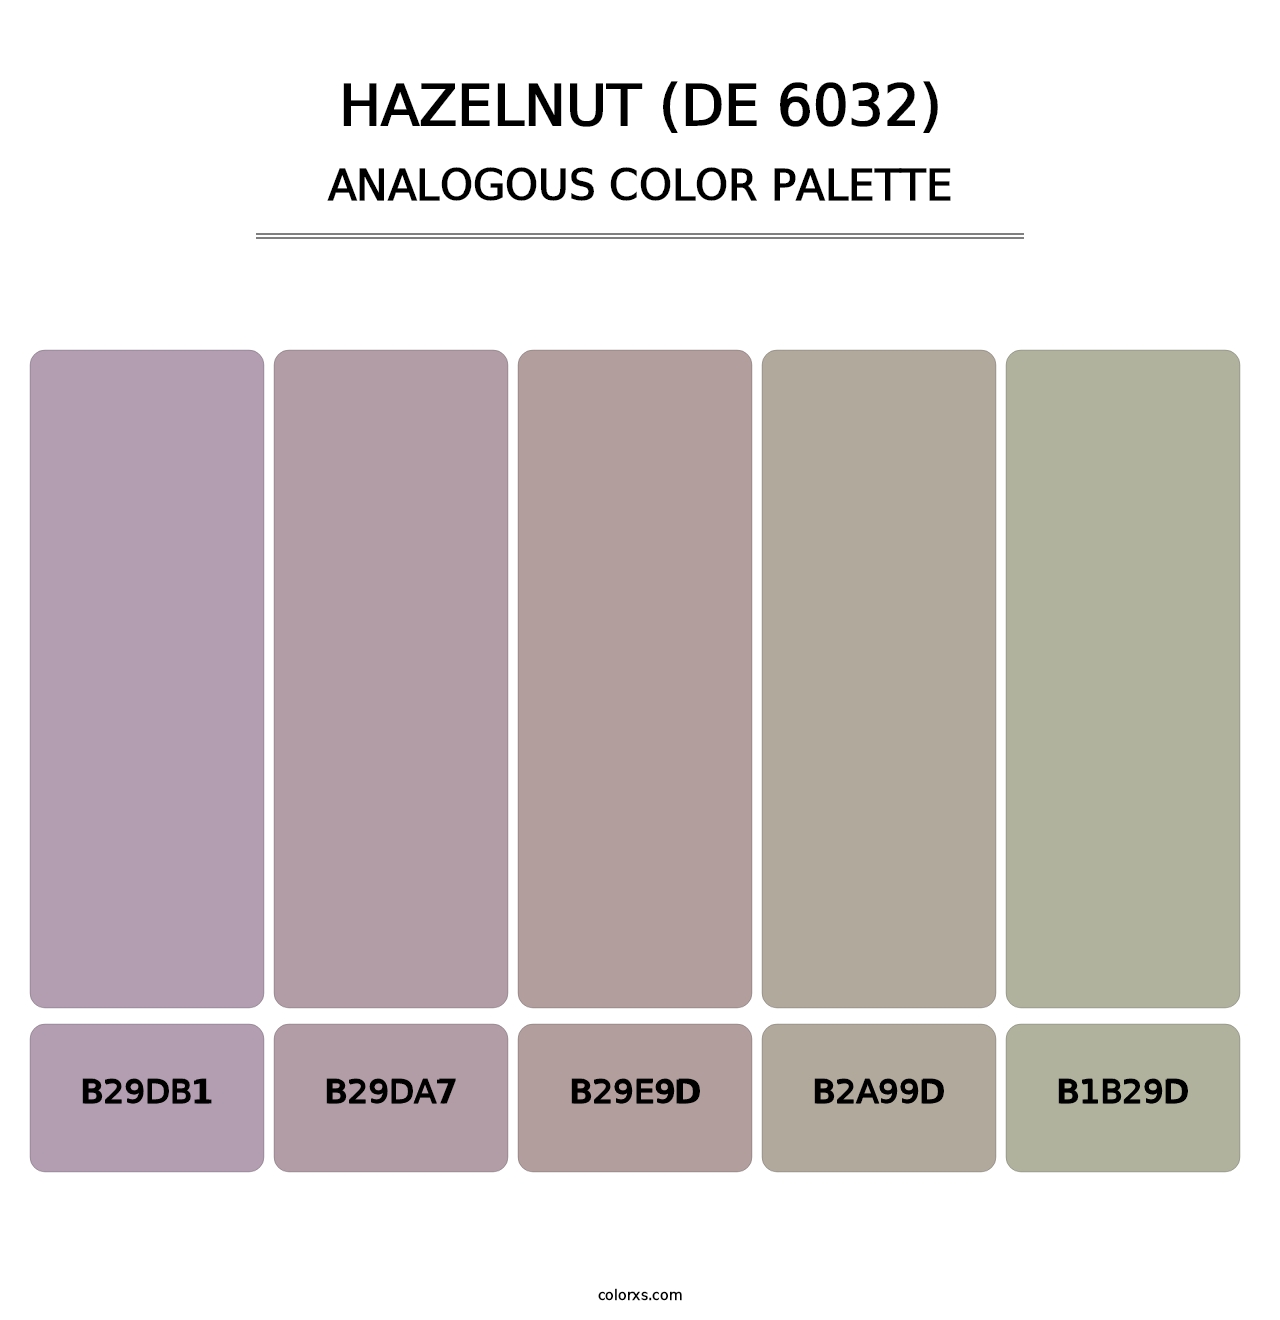 Hazelnut (DE 6032) - Analogous Color Palette